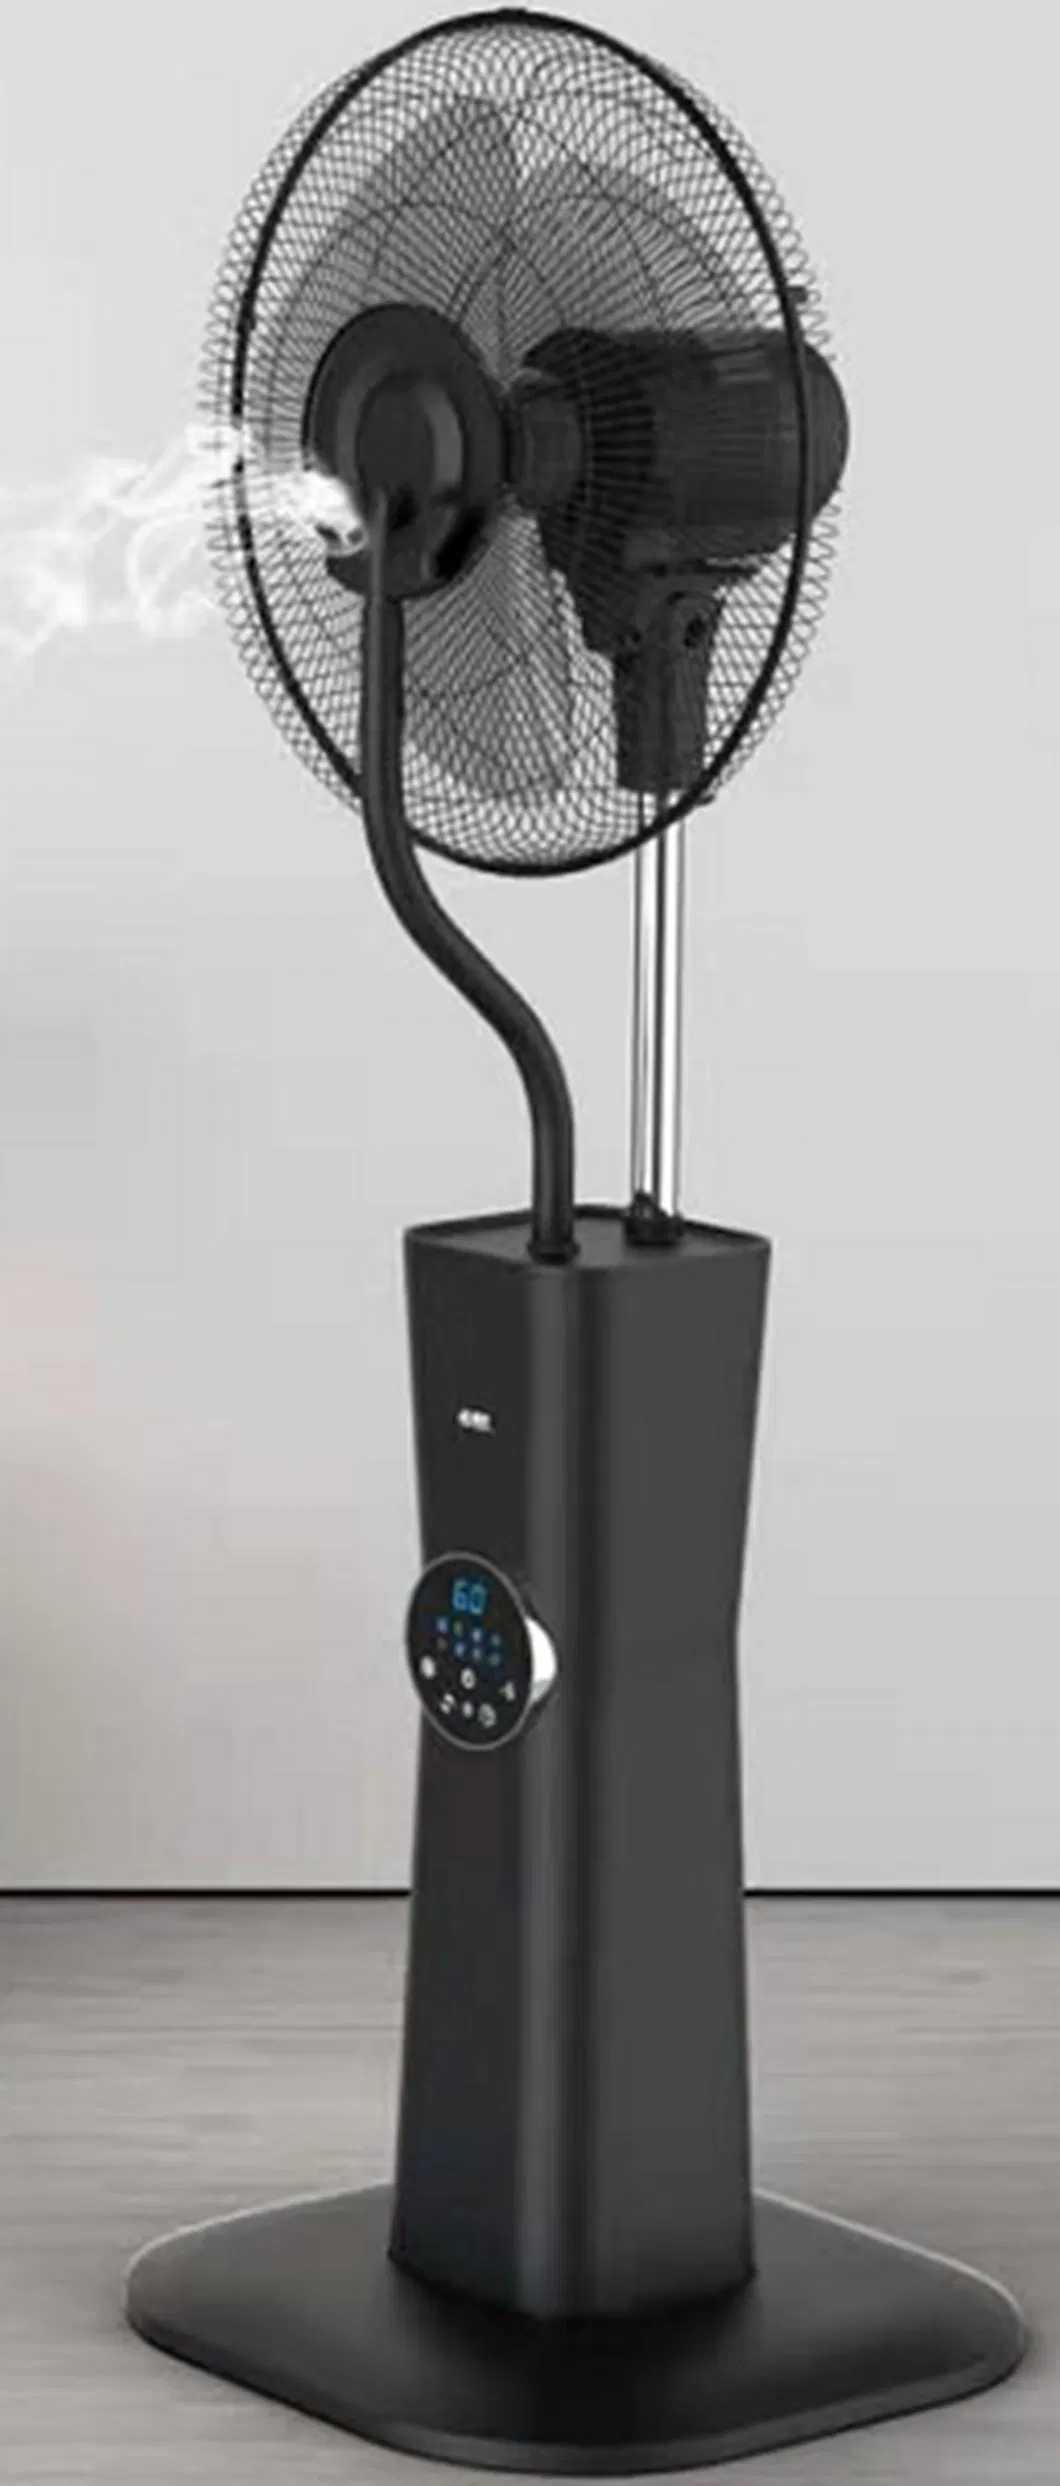 Fan Oscillation Adjustable 90 Degrees Automatically Mist Fan Fp-1603s